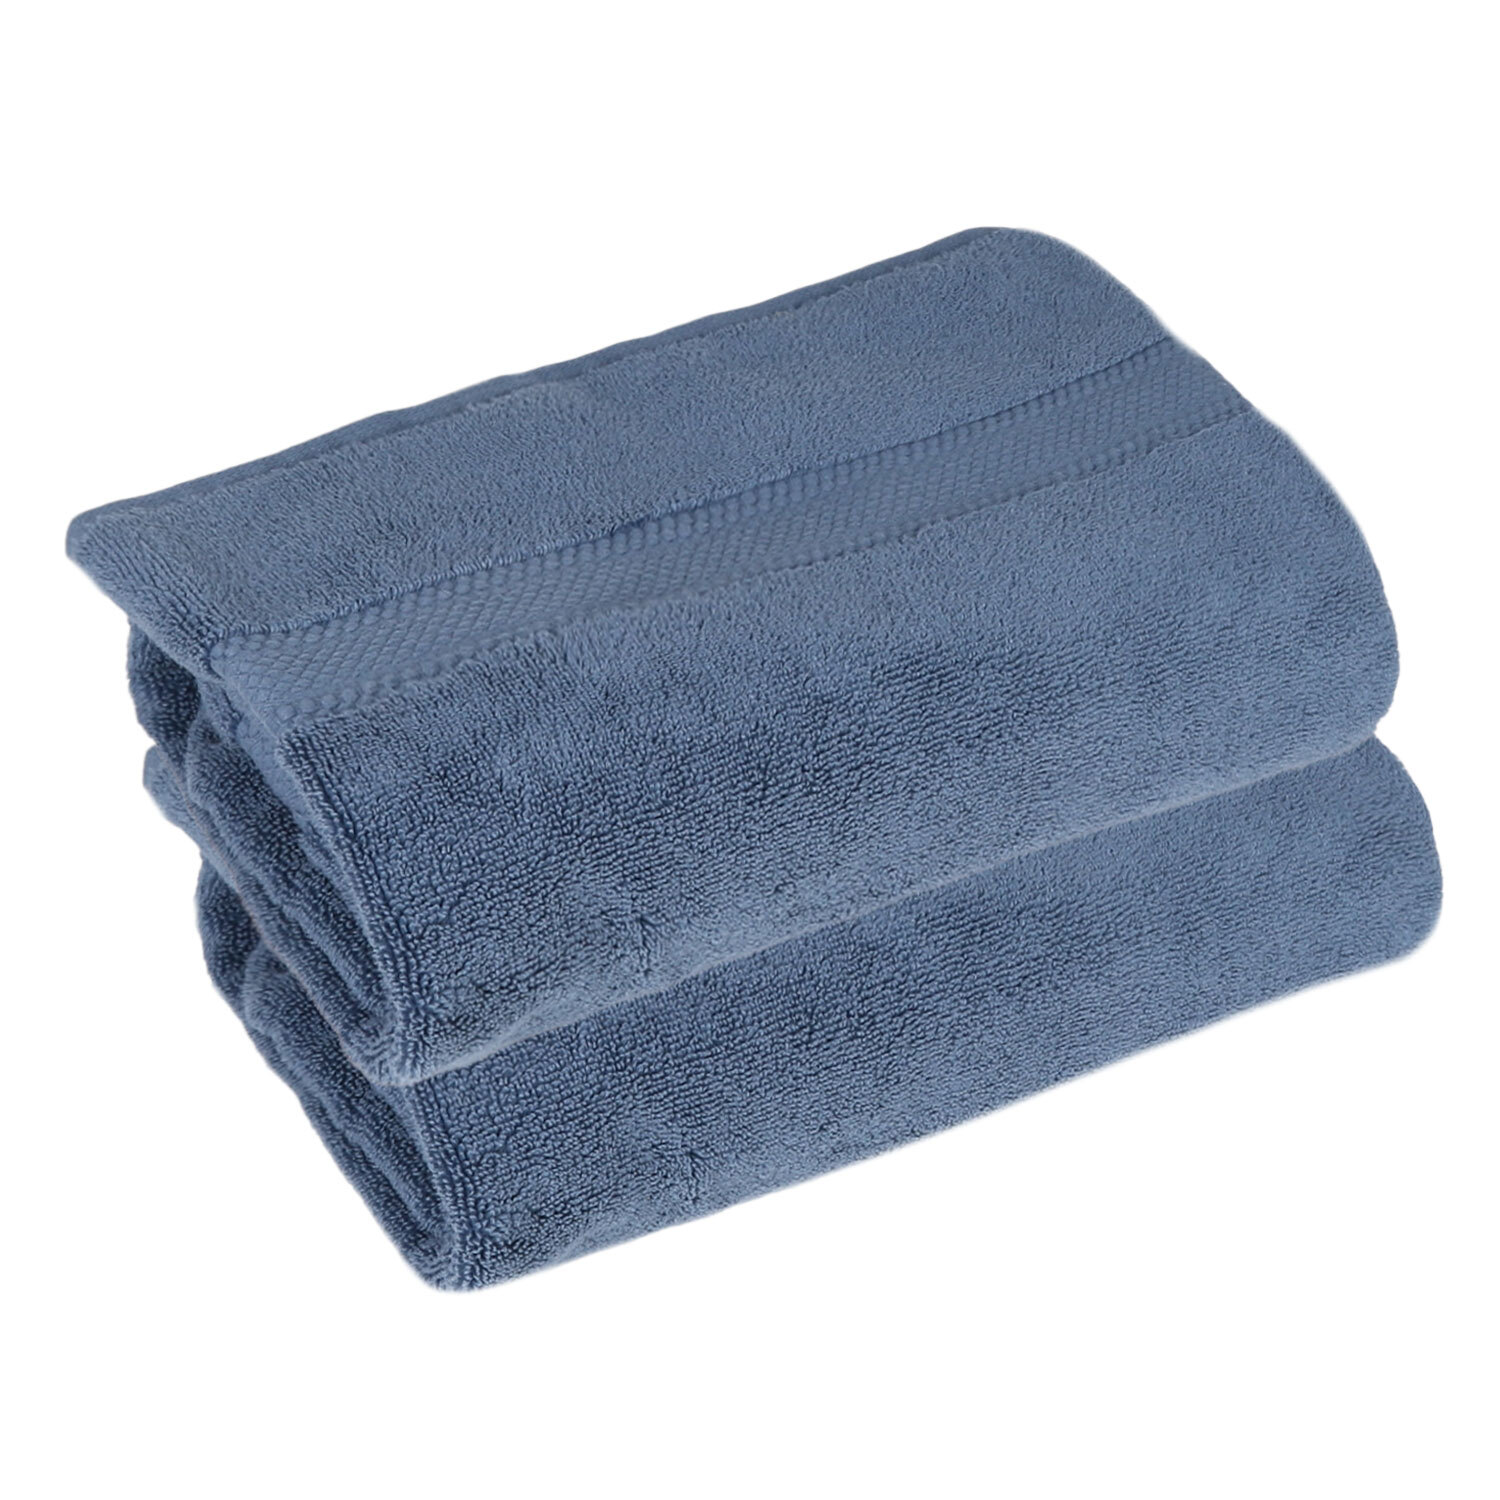 Deluxe Hand Towel - Denim Image 1